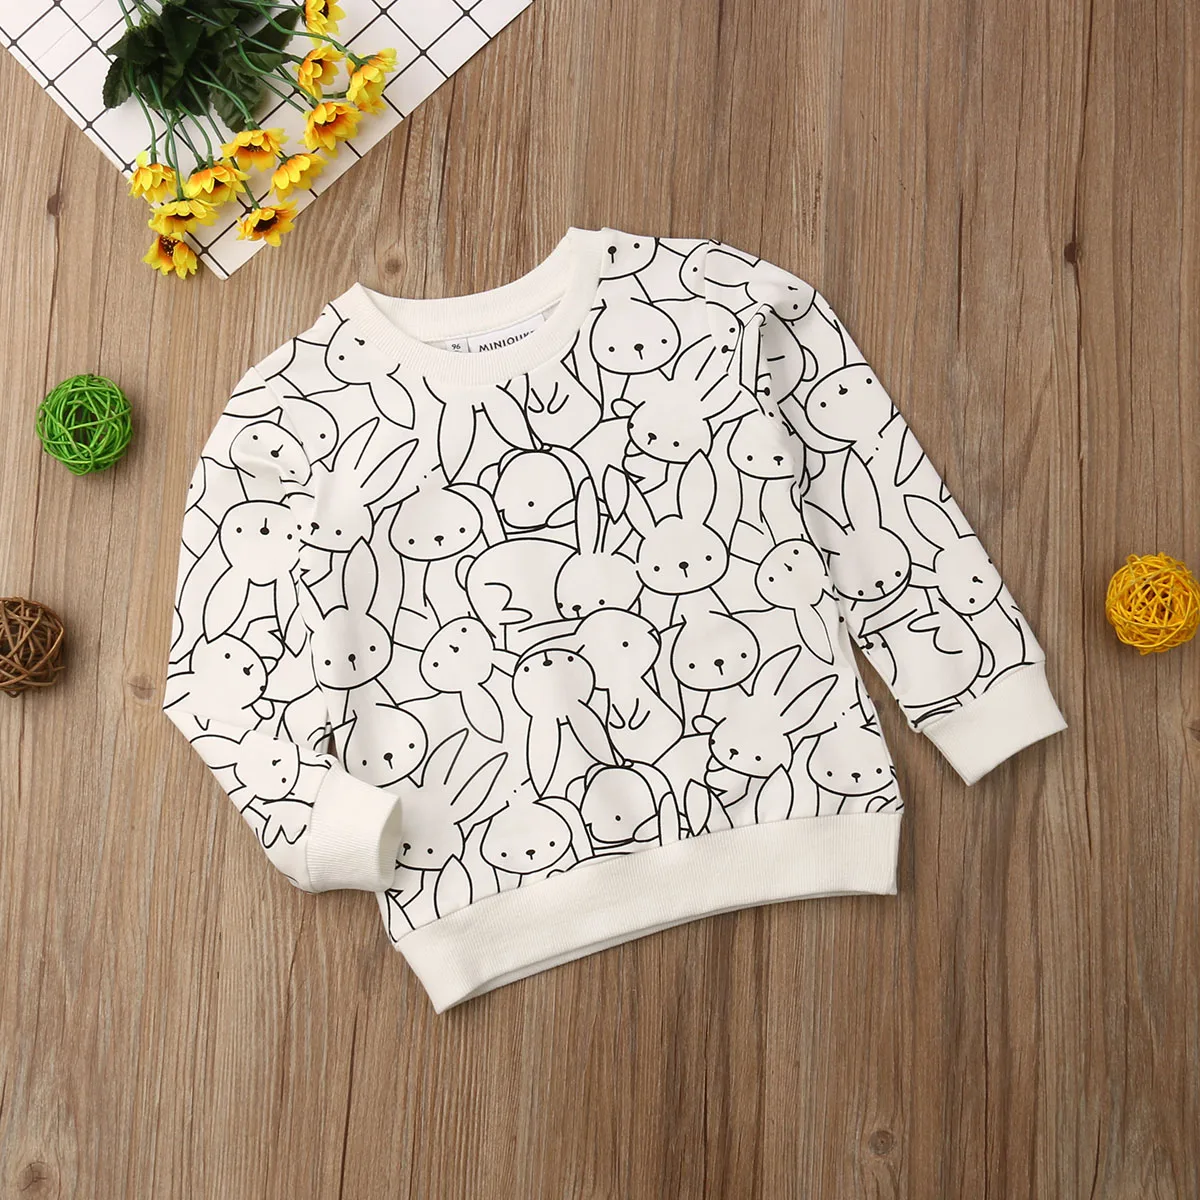 Детская футболка с леопардовым принтом и принтом кролика для маленьких мальчиков и девочек, толстовки, одежда